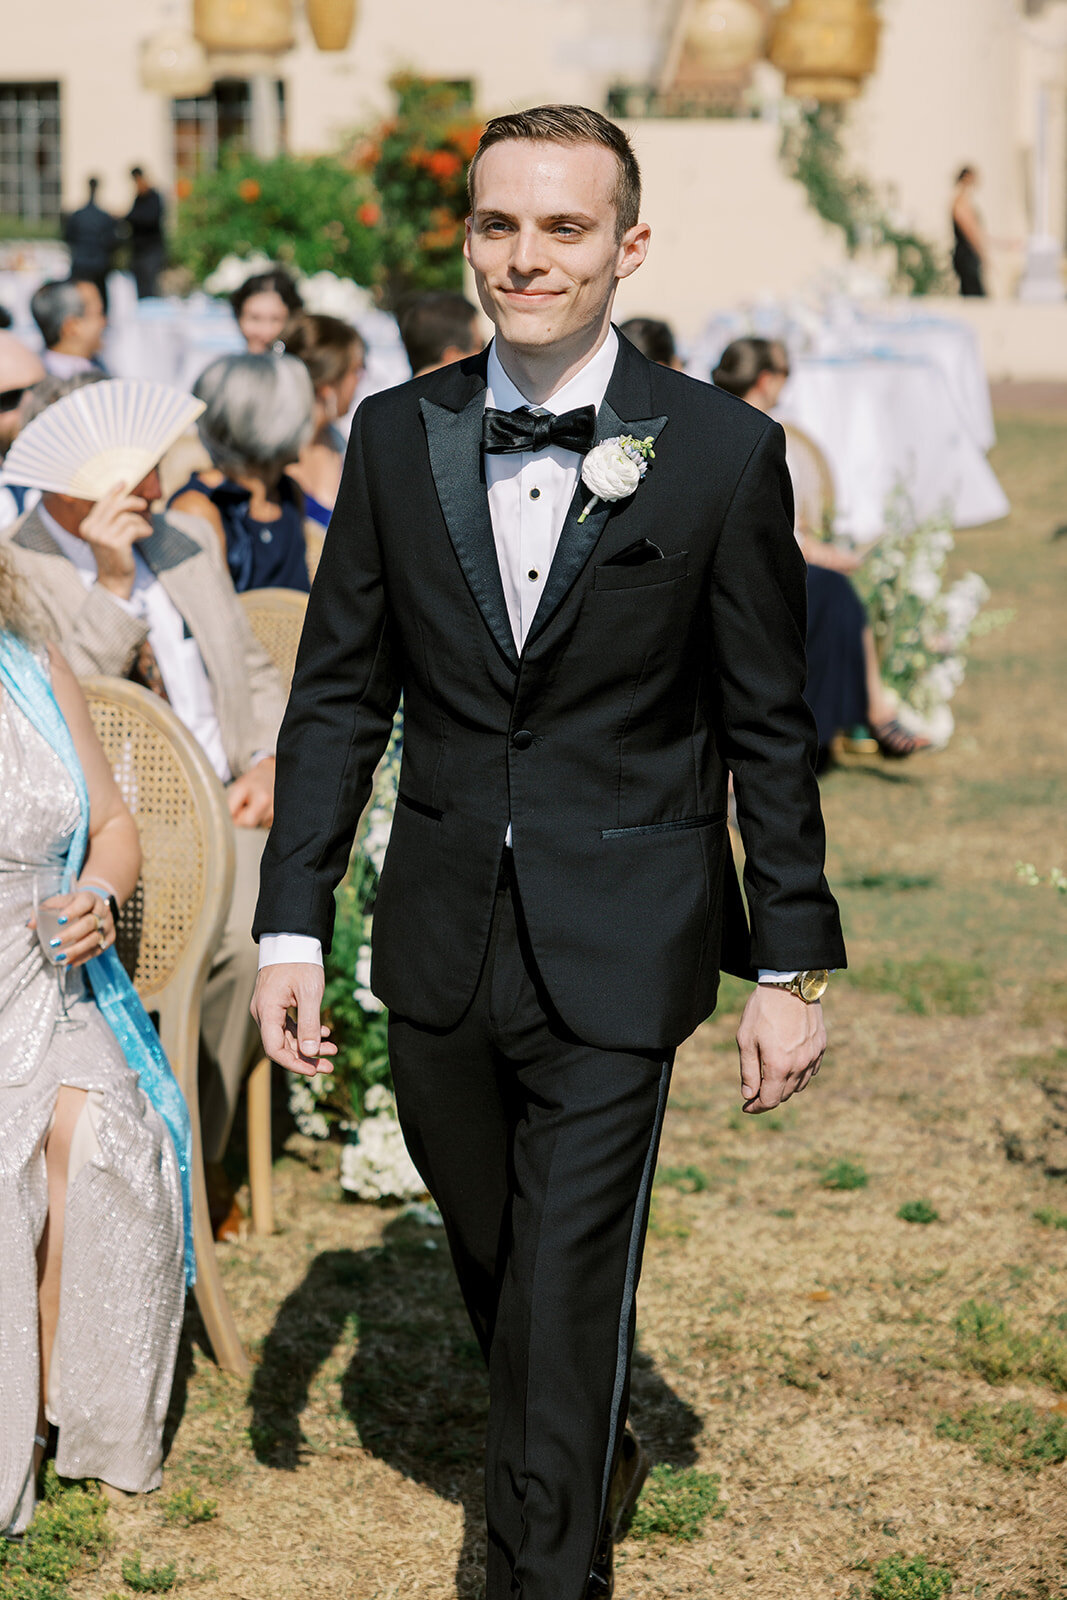 CORNELIA ZAISS PHOTOGRAPHY COURTNEY + ANDREW WEDDING 0784_websize